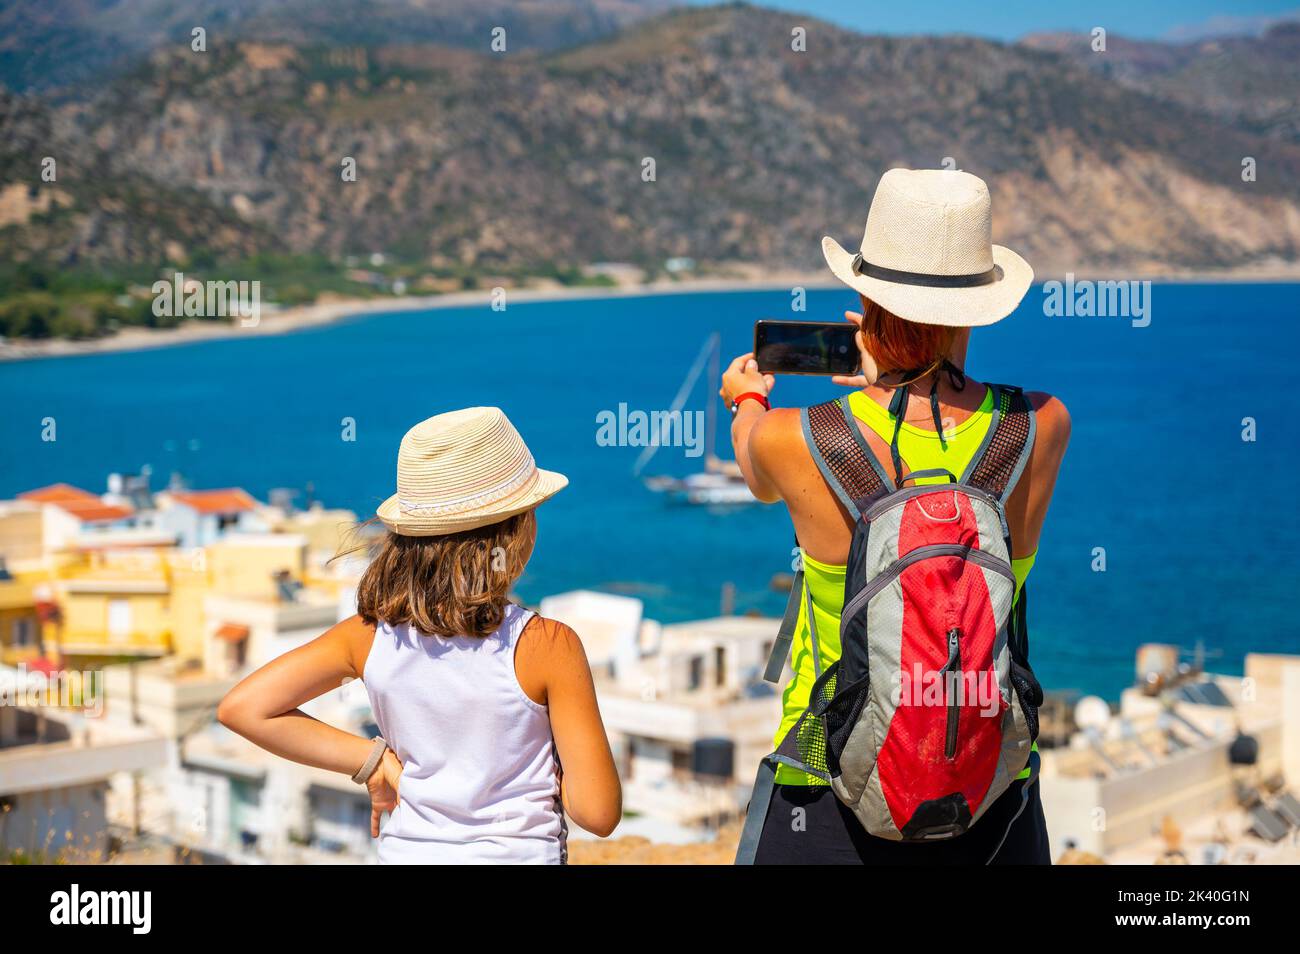 Touristes photographiant un voilier à Paleochora, Crète, Grèce. Mère et fille se tenant au-dessus de la baie de Paléochora, prenant des photos de la baie et Banque D'Images